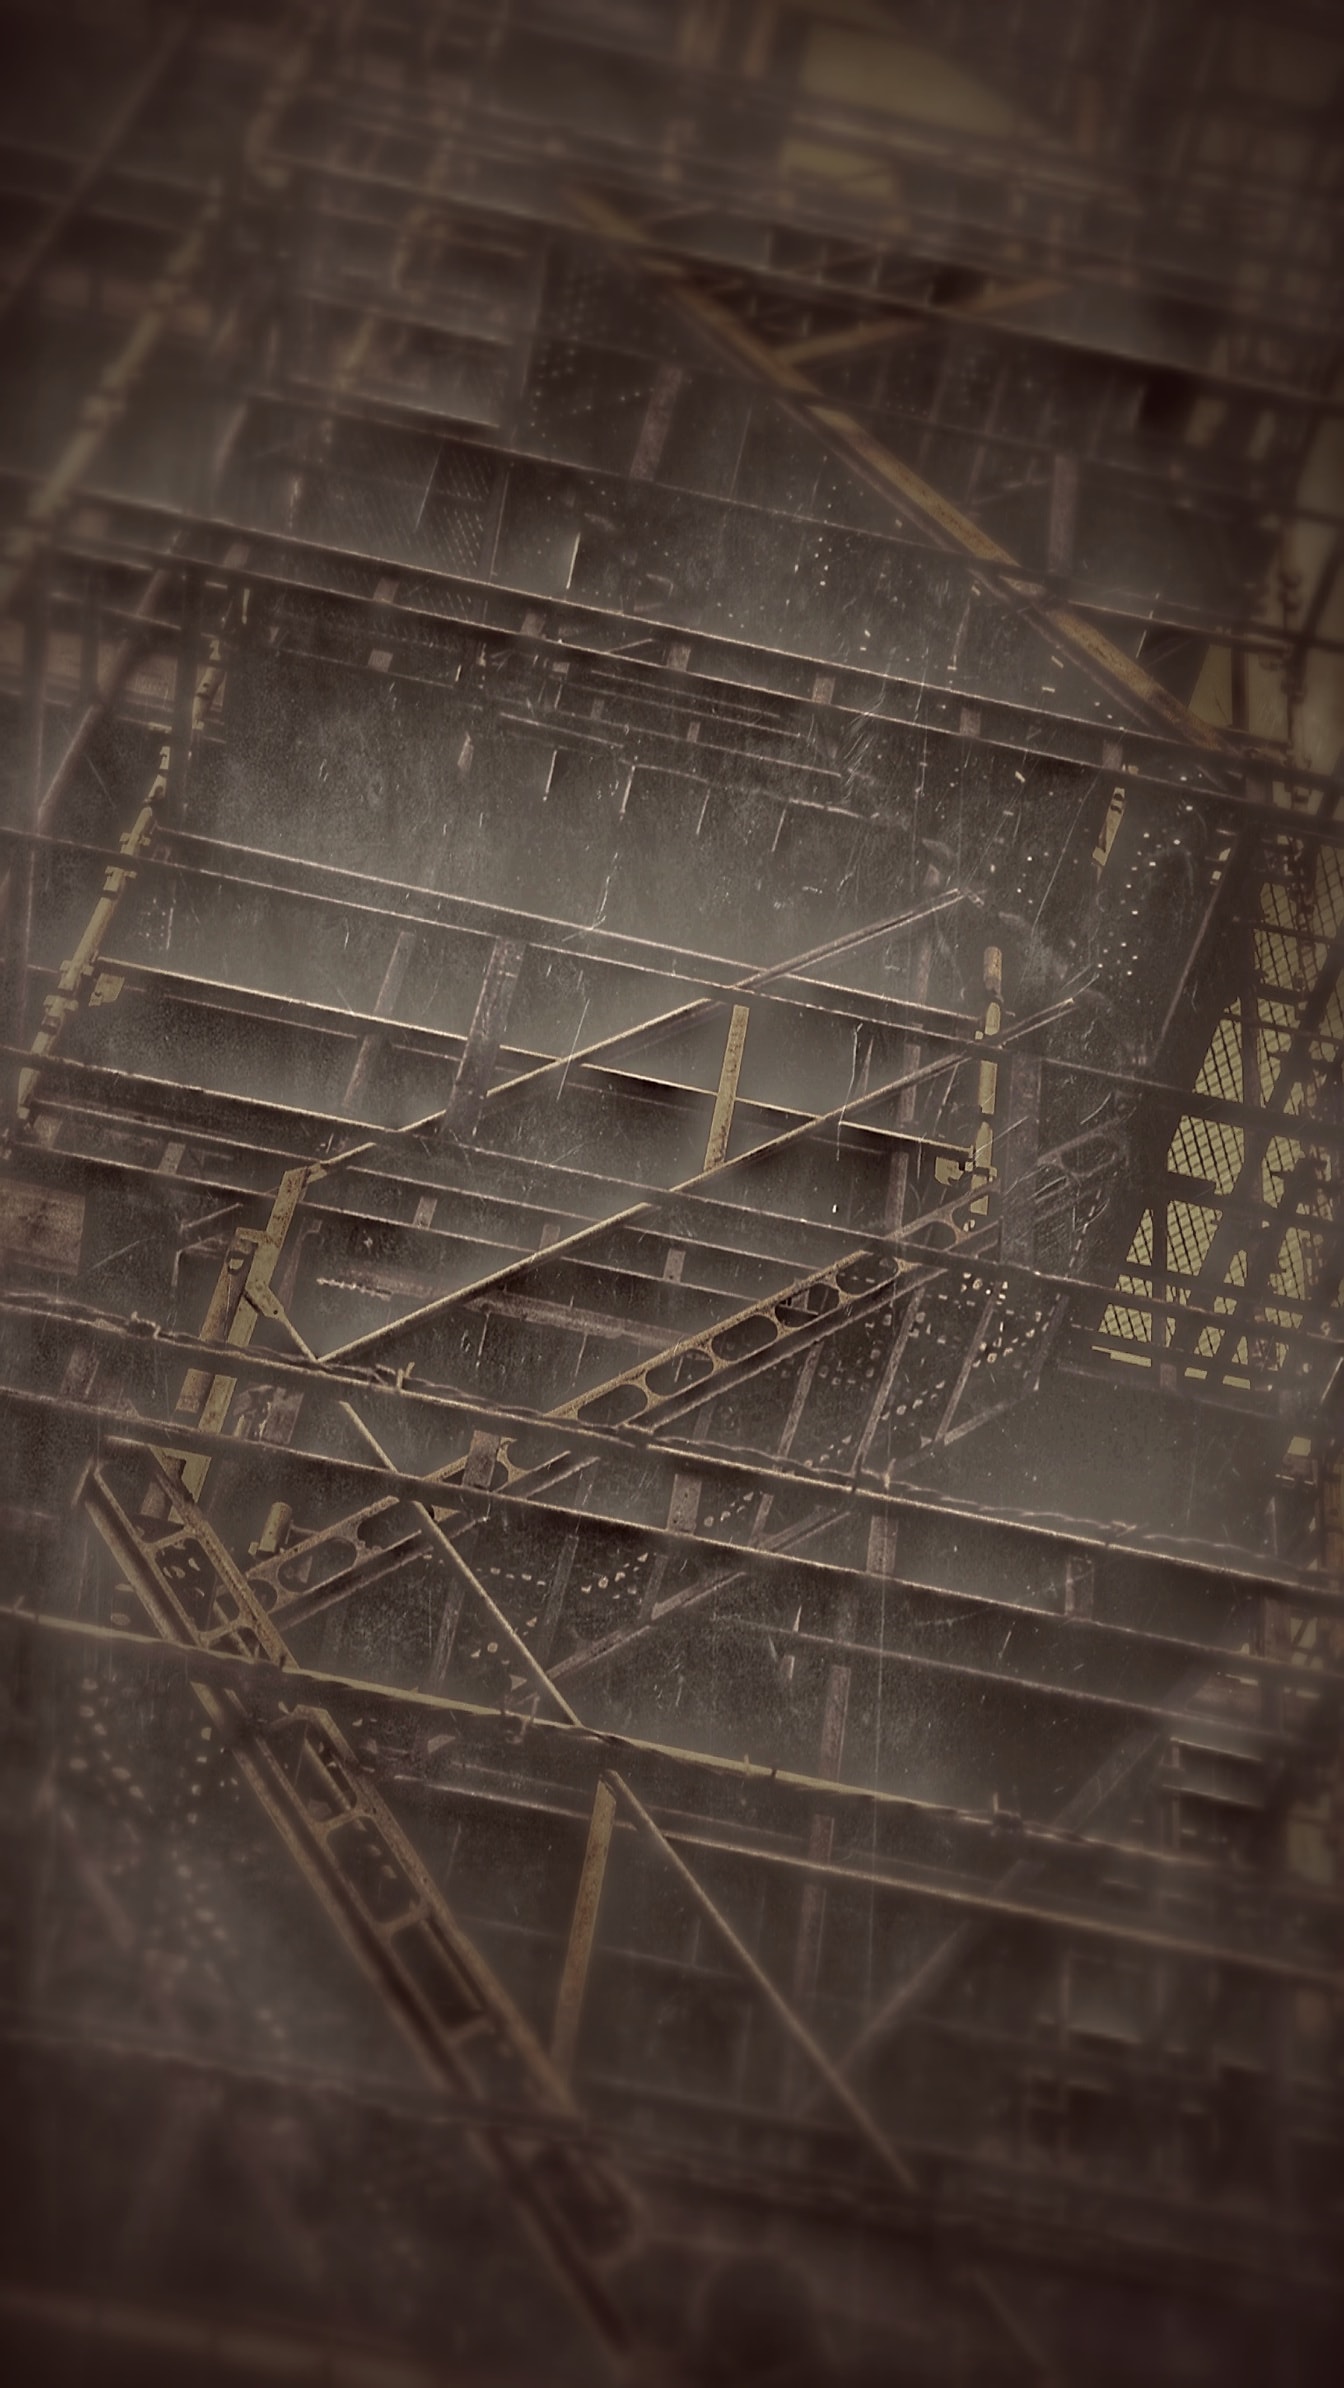 Alexey Titarenko’dan esinlenerek binadaki çelik merdivenler sepya fotoğrafı